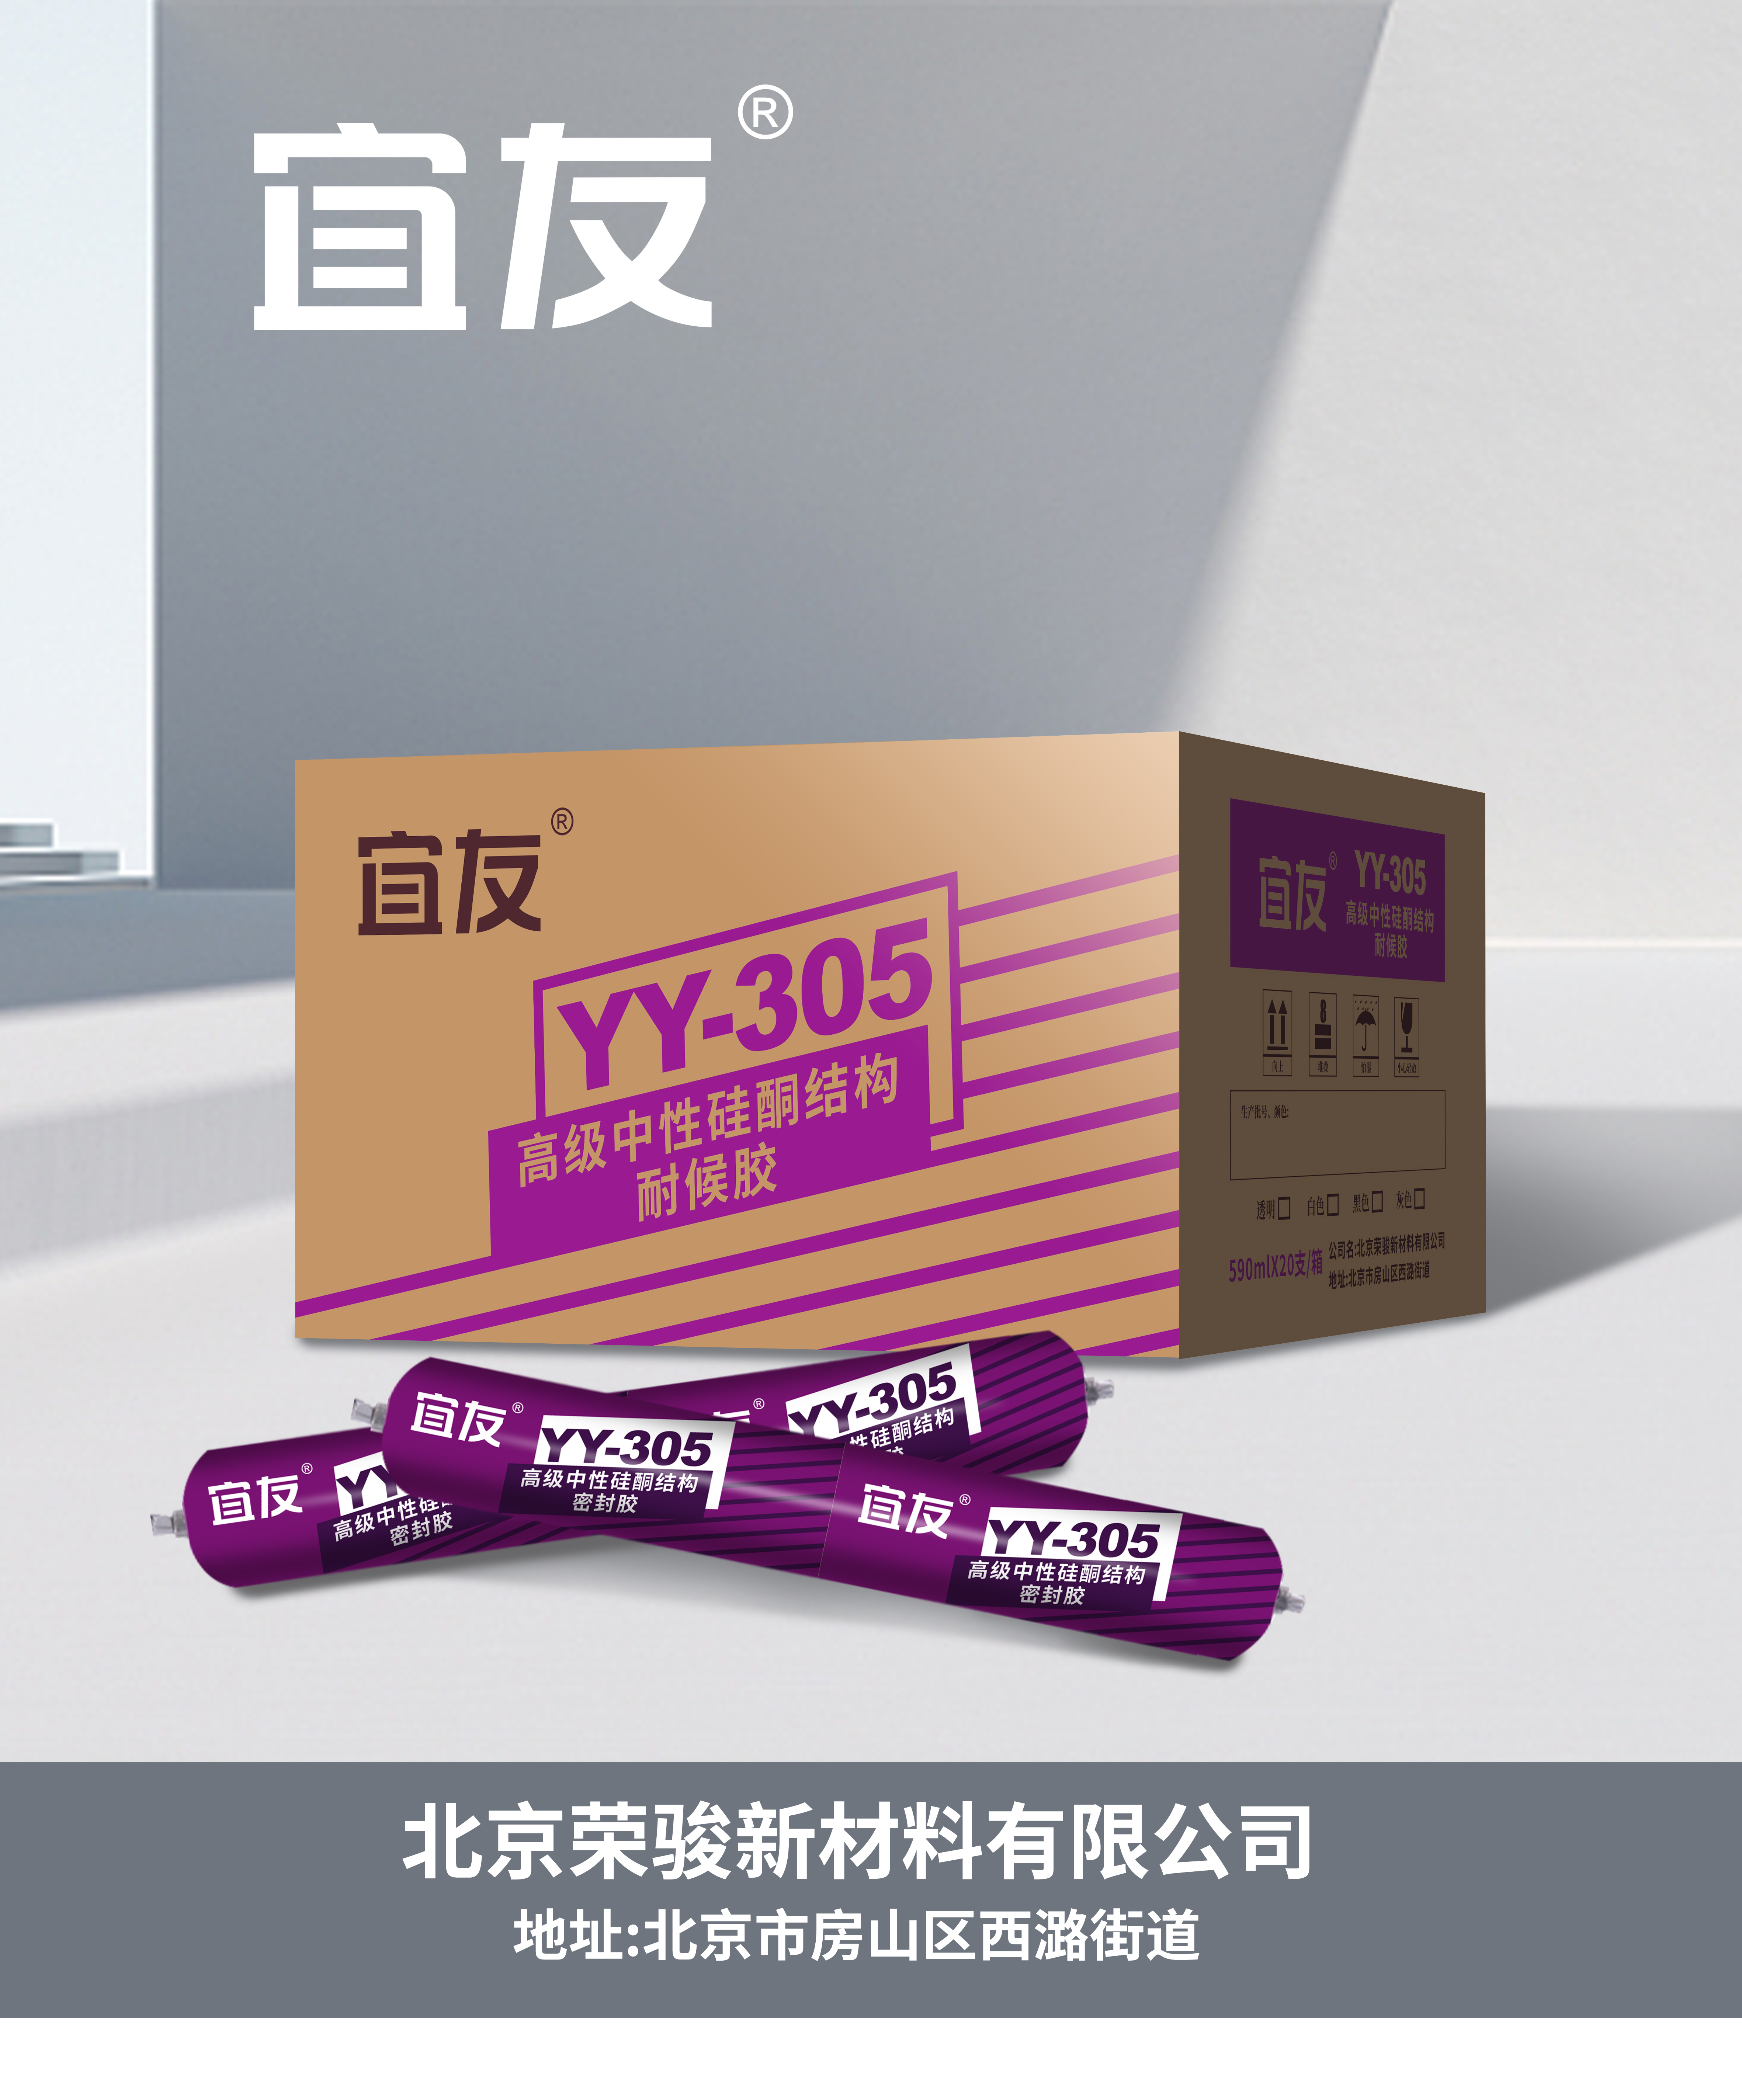 YY-305高級中性硅酮結構耐候膠